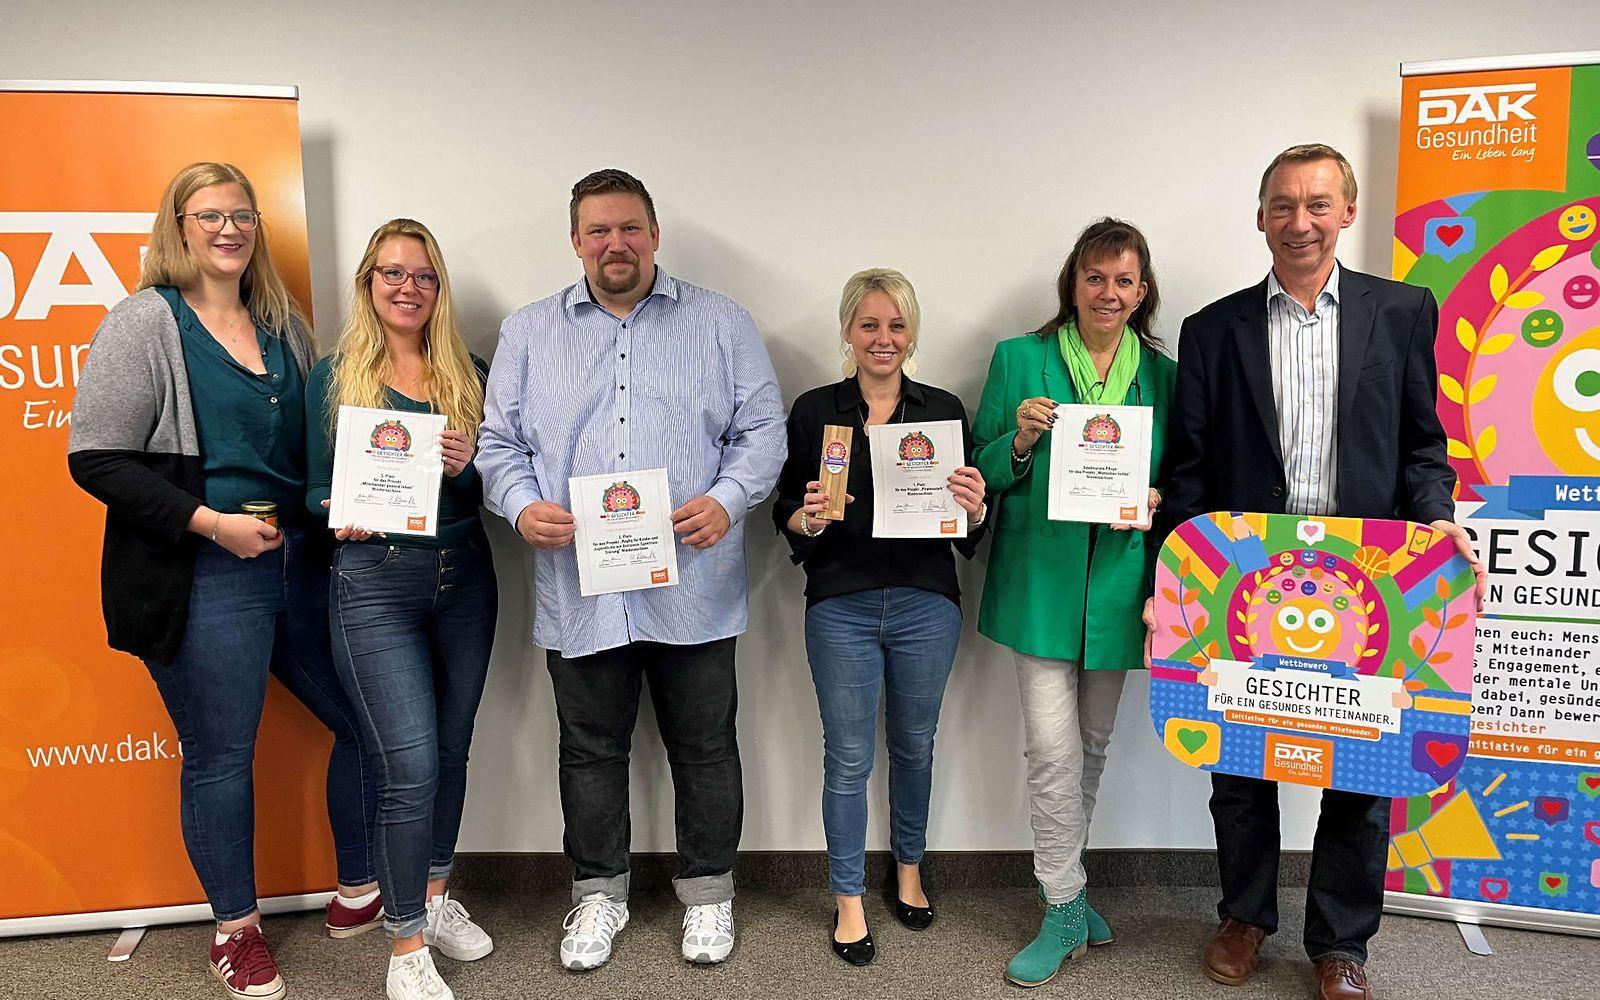 Bild: Gruppenfoto der Siegerinnen und Sieger des Wettbewerbs "Gesichter für ein gesundes Miteinander 2023" aus Niedersachsen